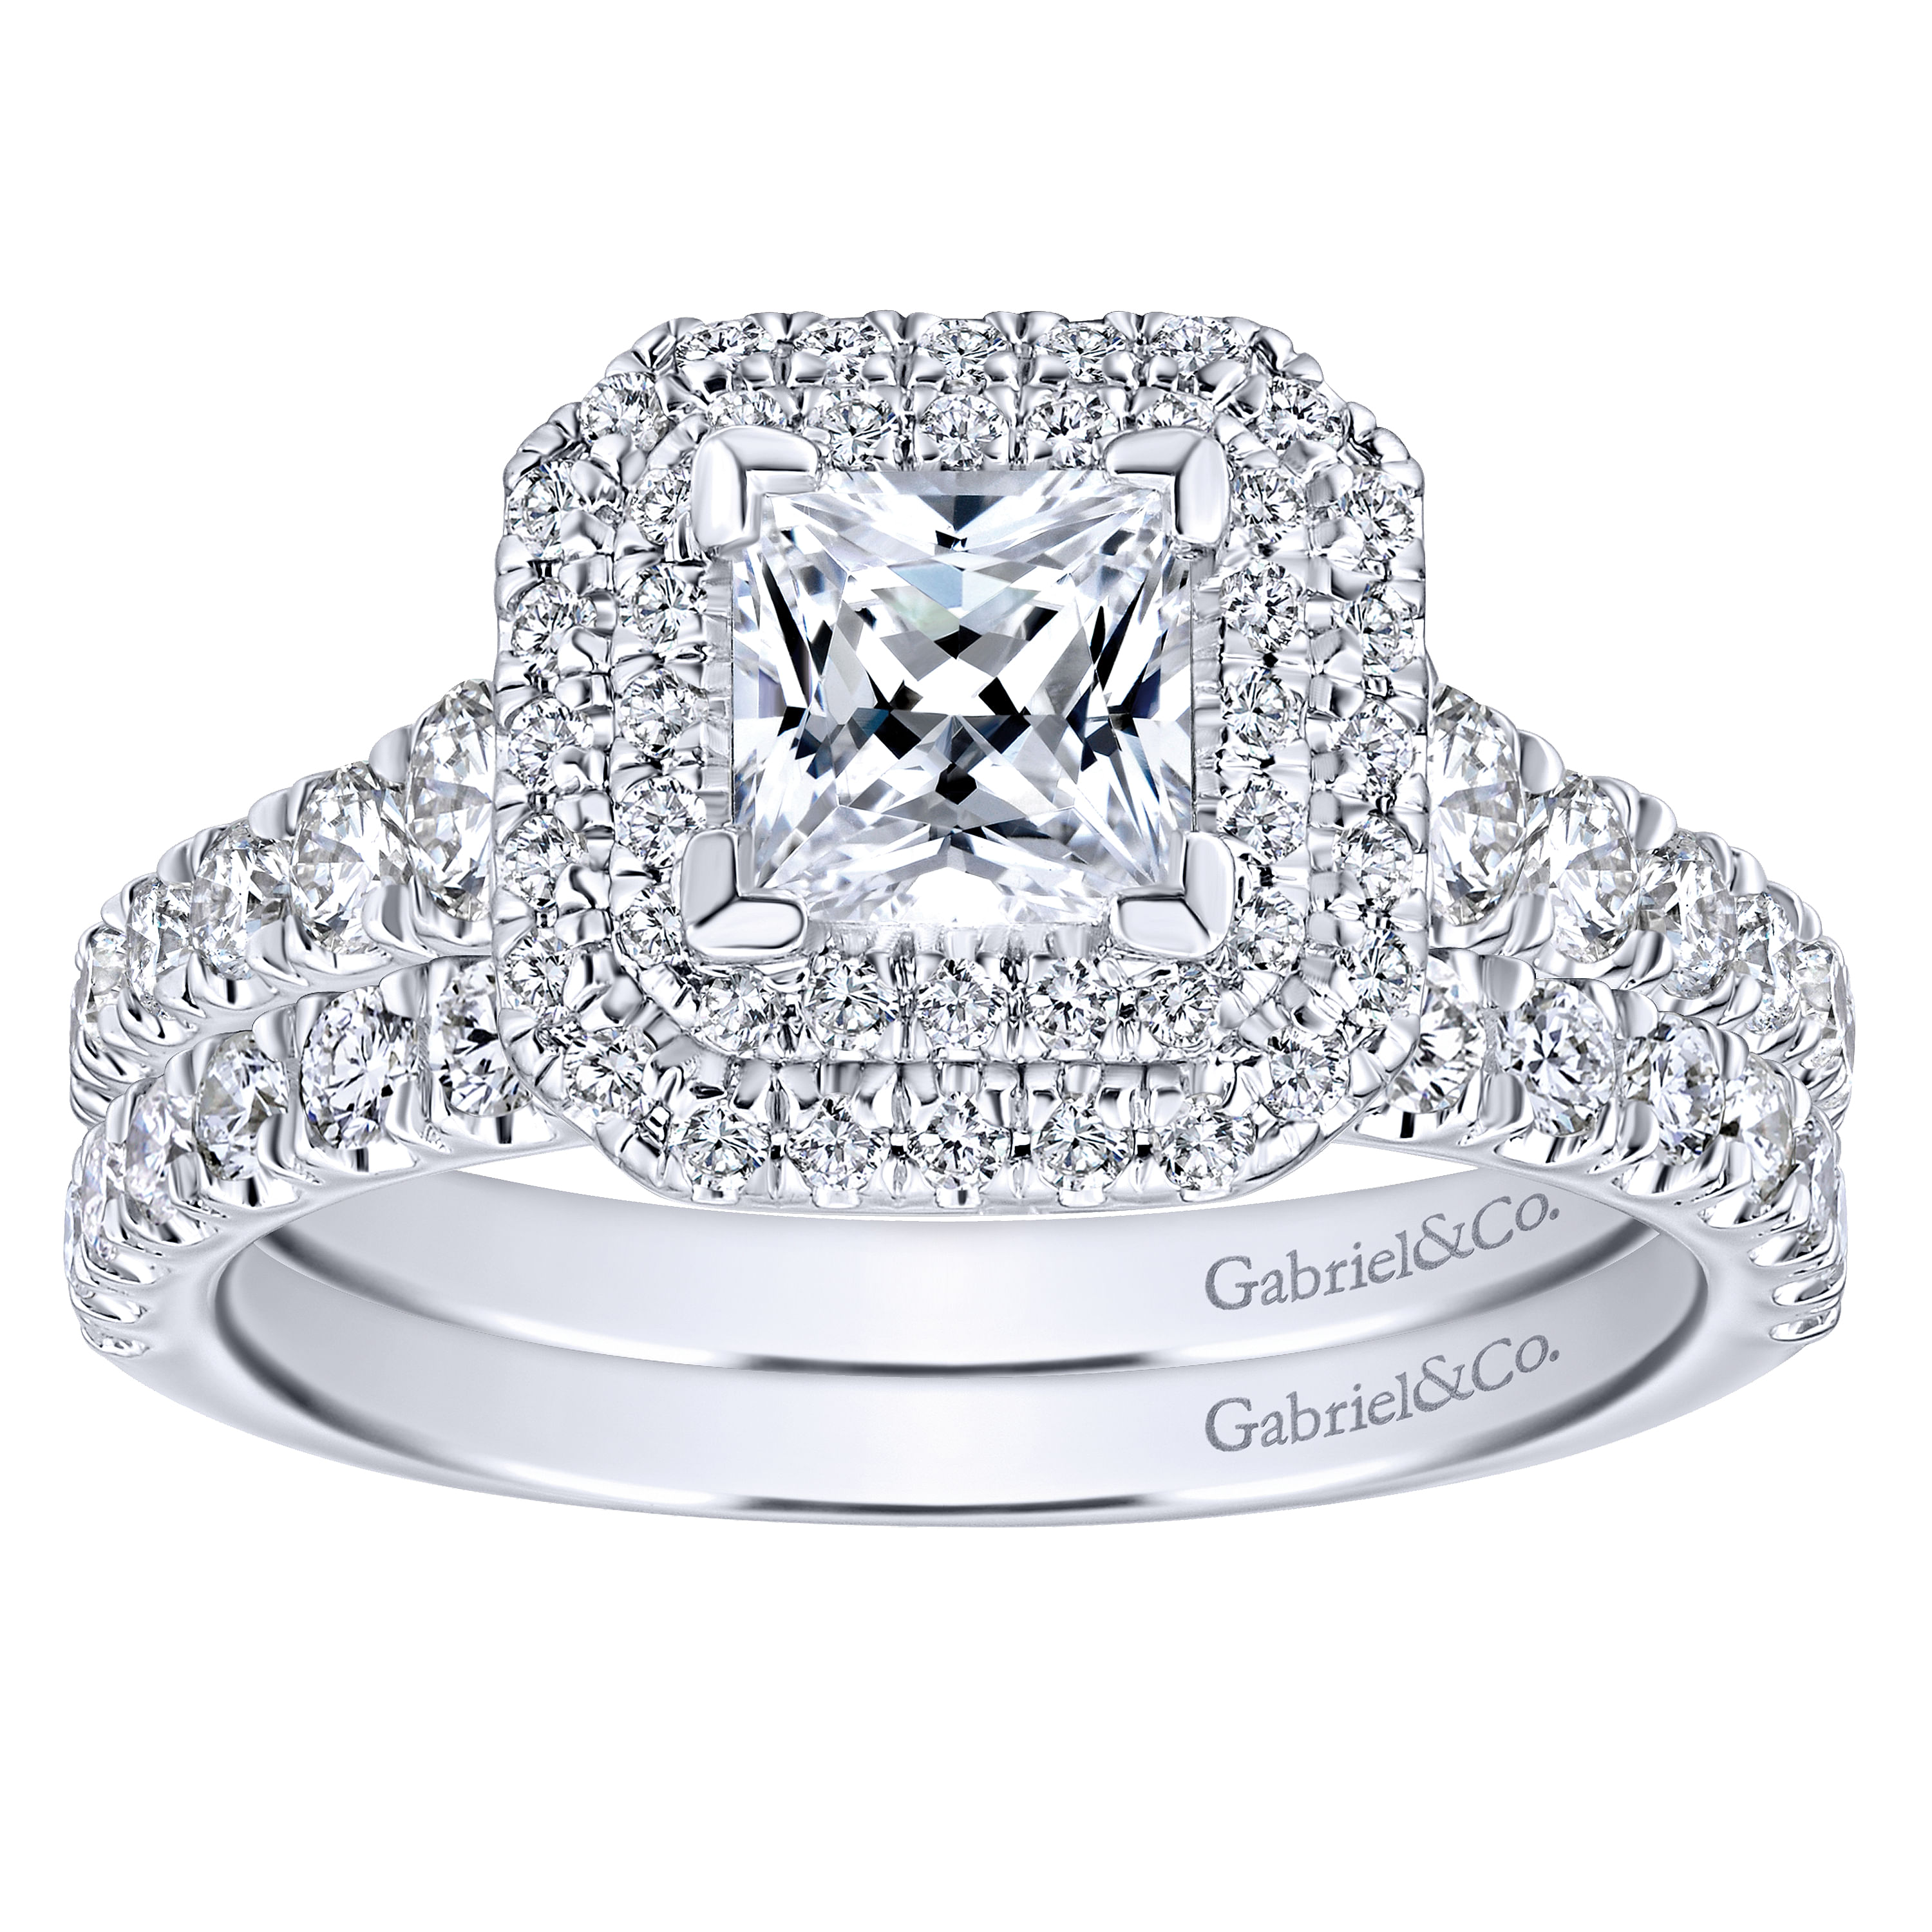 14K White-Rose Gold Princess Cut Diamond Engagement Ring